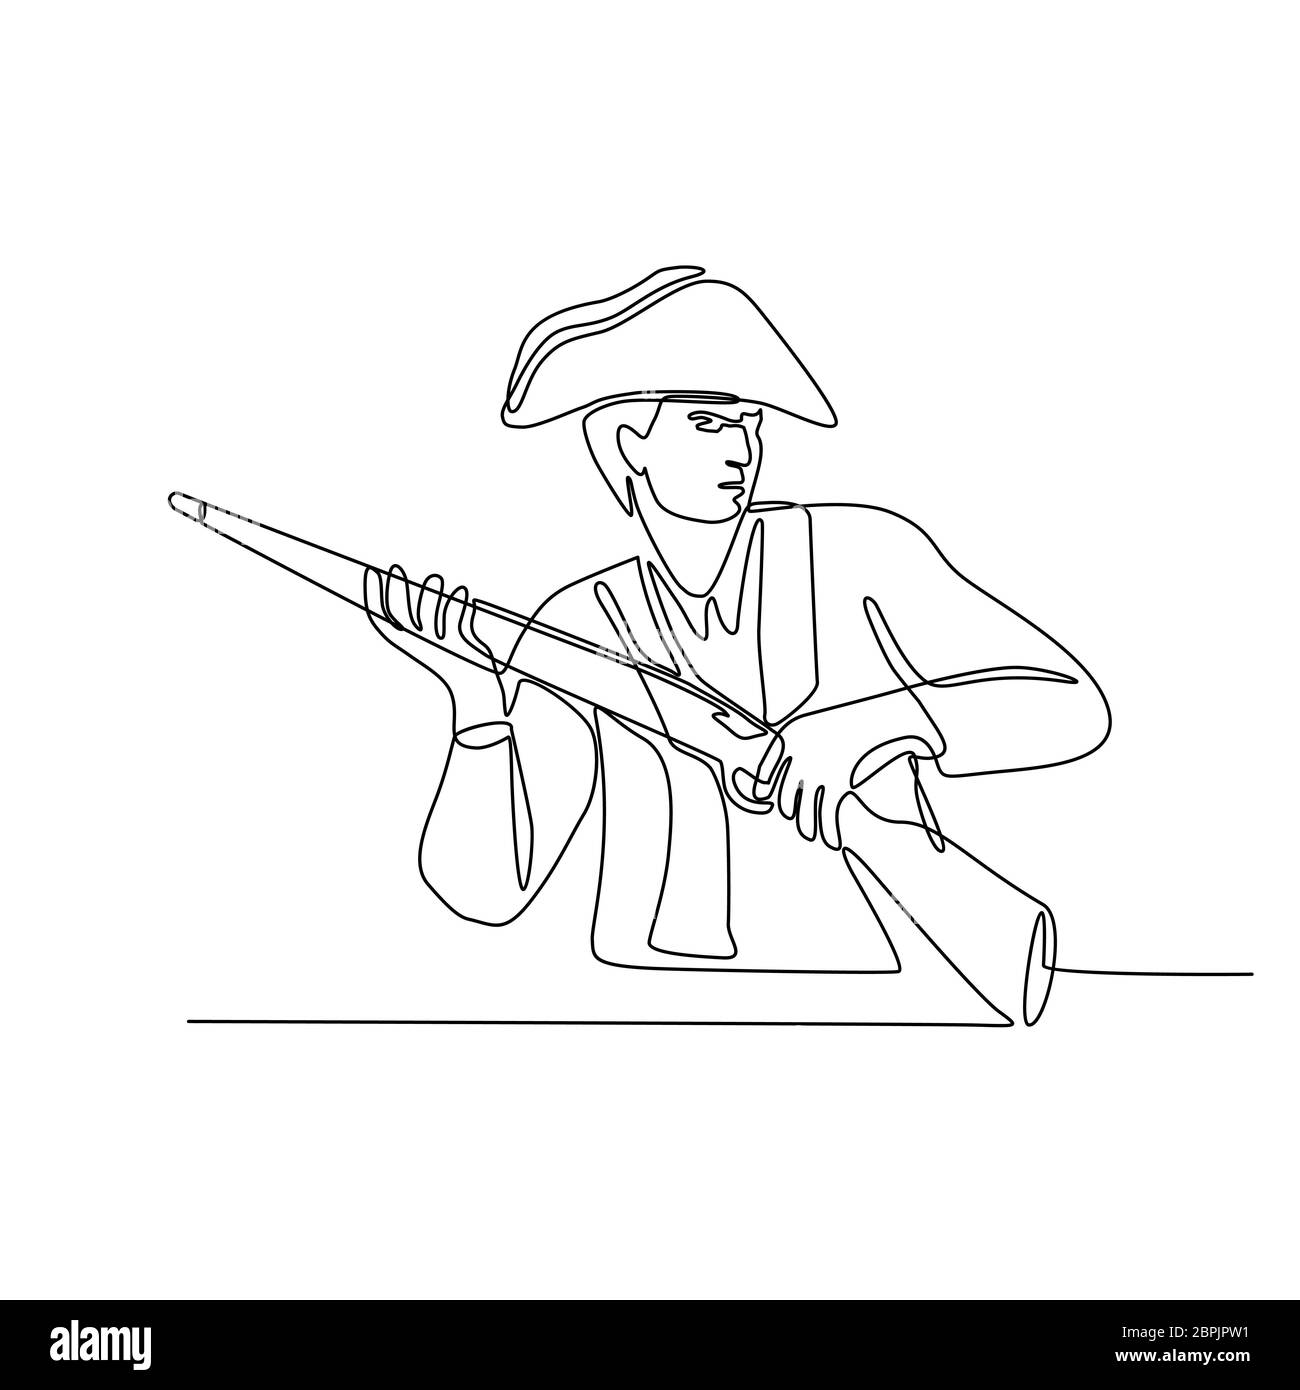 Linea continua illustrazione di un americano minuteman, patriota o soldato rivoluzionario con moschetto fucile, una volata caricato a pistola a lungo fatto in bianco e nero e Foto Stock